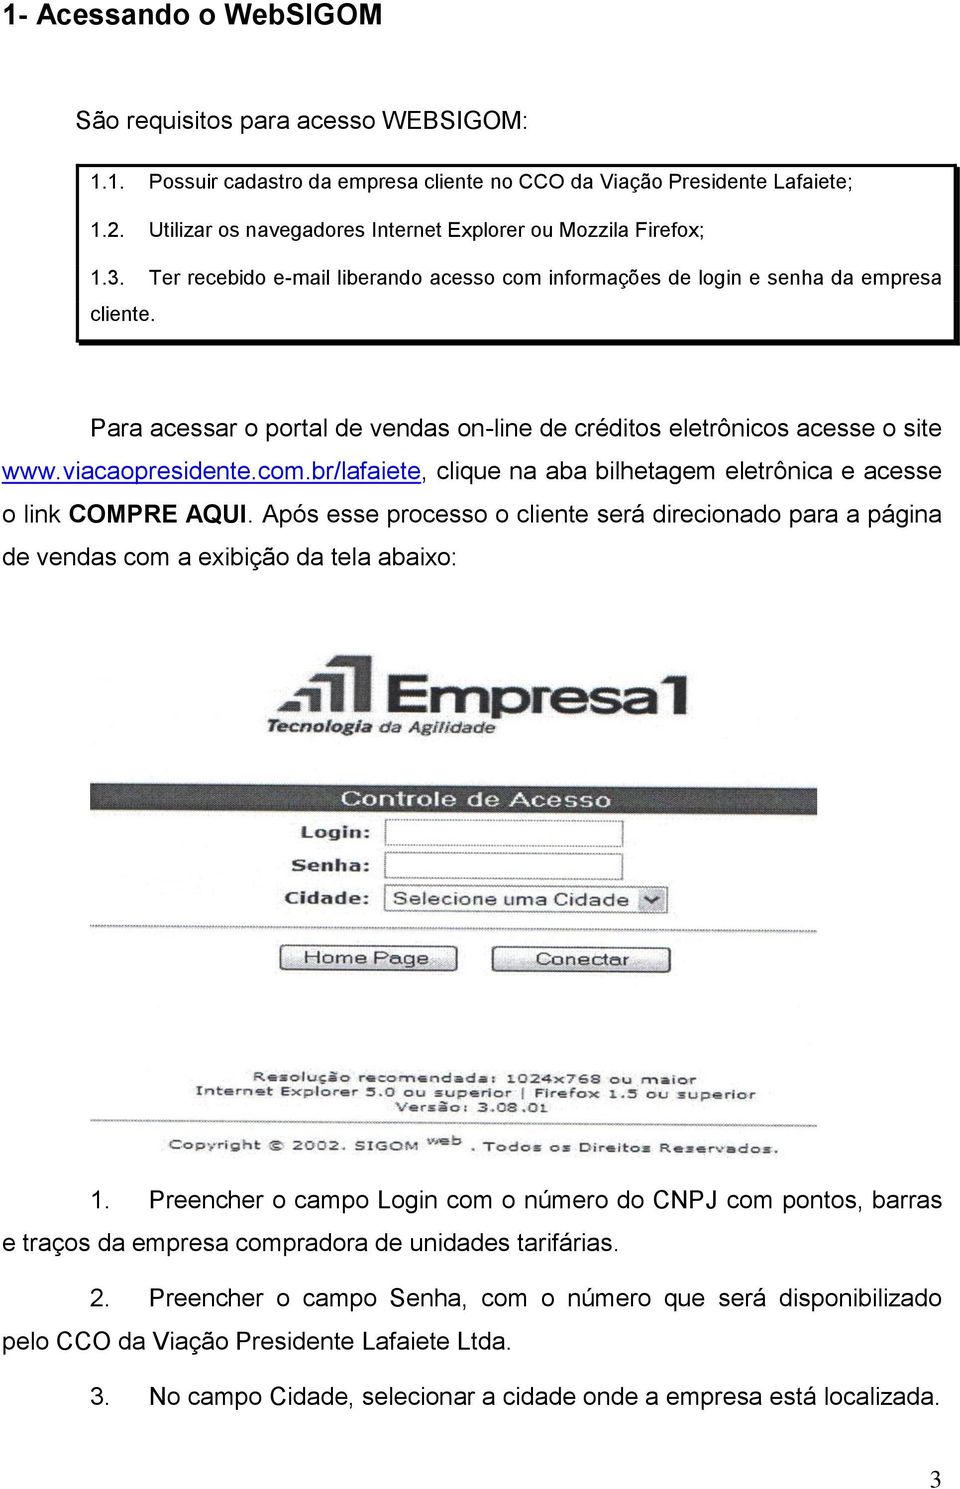 Para acessar o portal de vendas on-line de créditos eletrônicos acesse o site www.viacaopresidente.com.br/lafaiete, clique na aba bilhetagem eletrônica e acesse o link COMPRE AQUI.